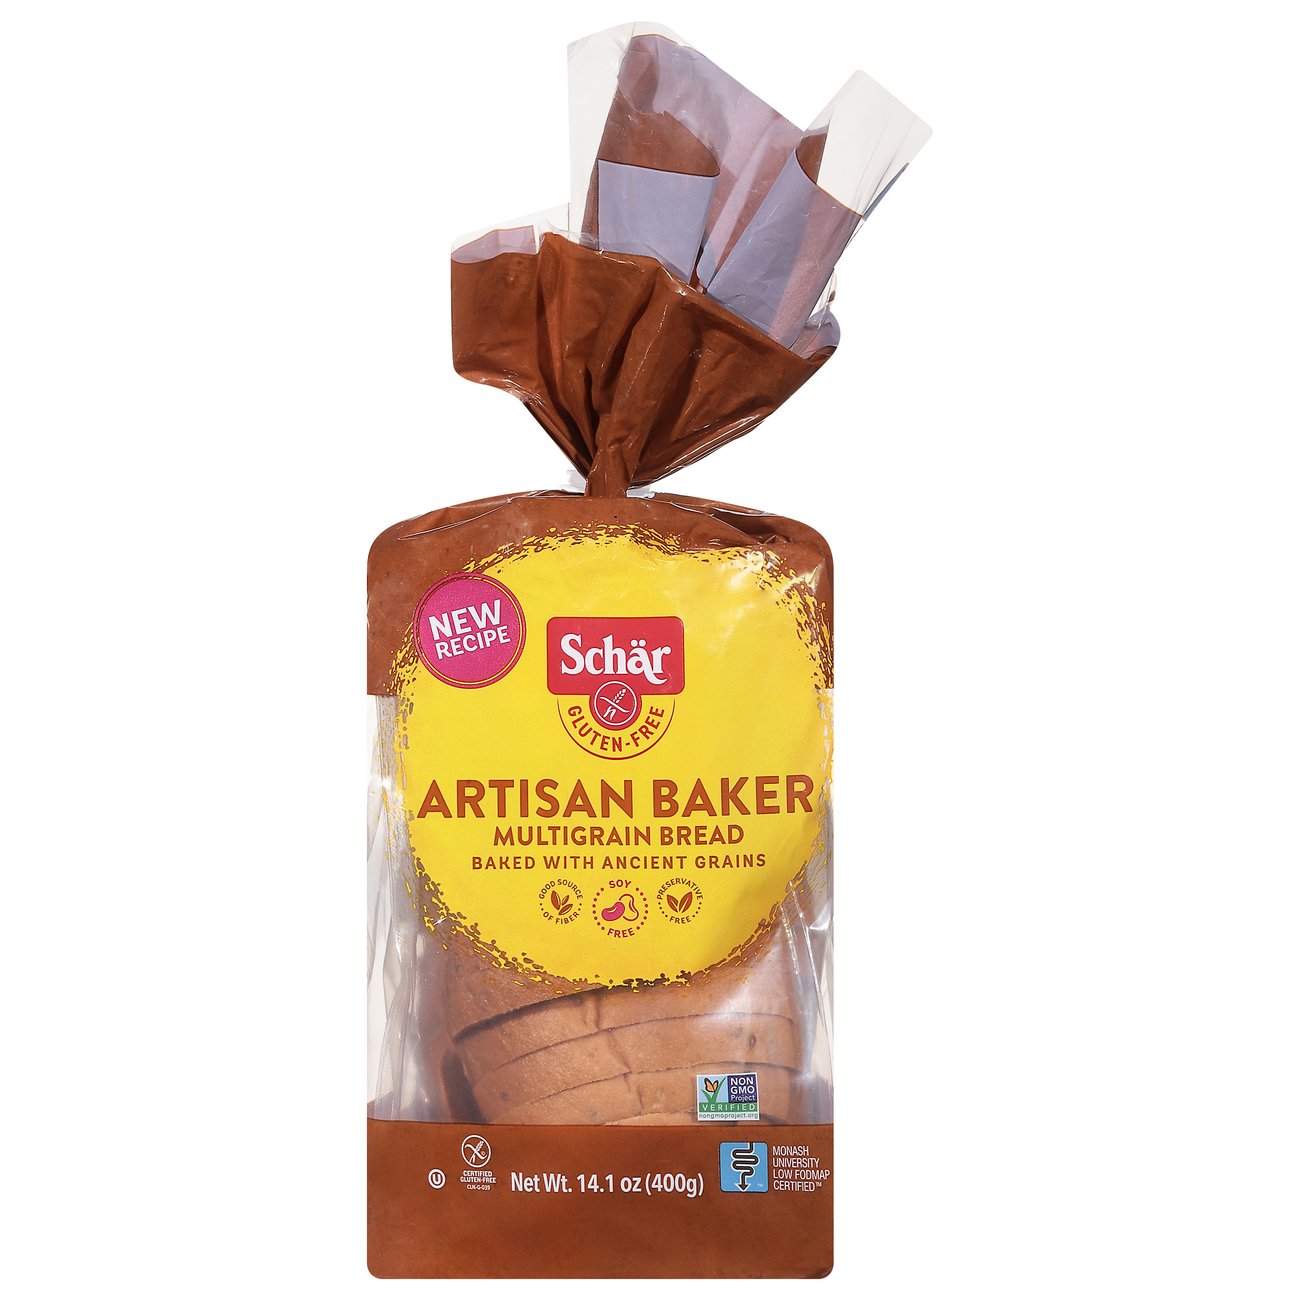 shuttle relæ angre Schar Gluten Free Artisan Baker Multigrain Bread - Shop Sliced Bread at  H-E-B